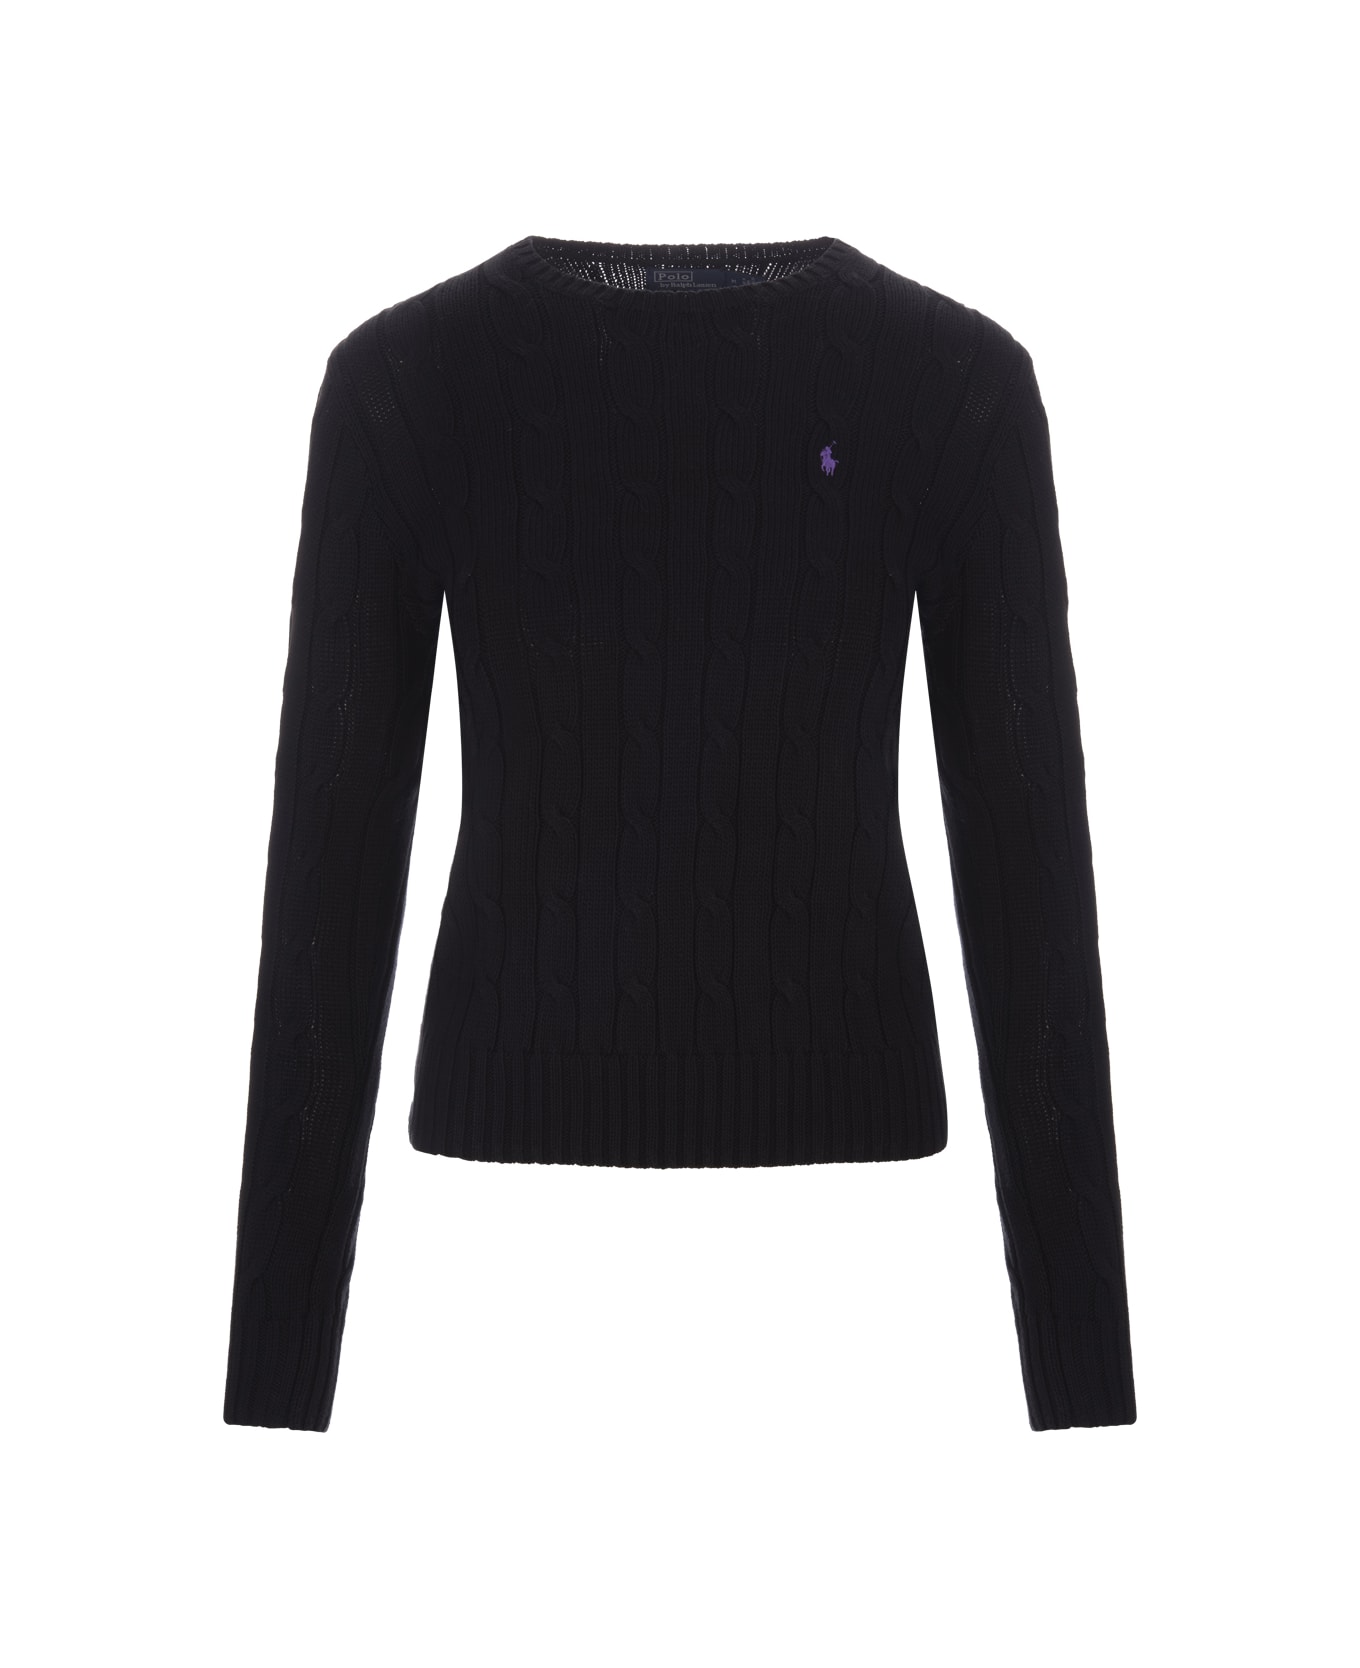 Ralph Lauren Crew Neck Sweater In Black Braided Knit - Black